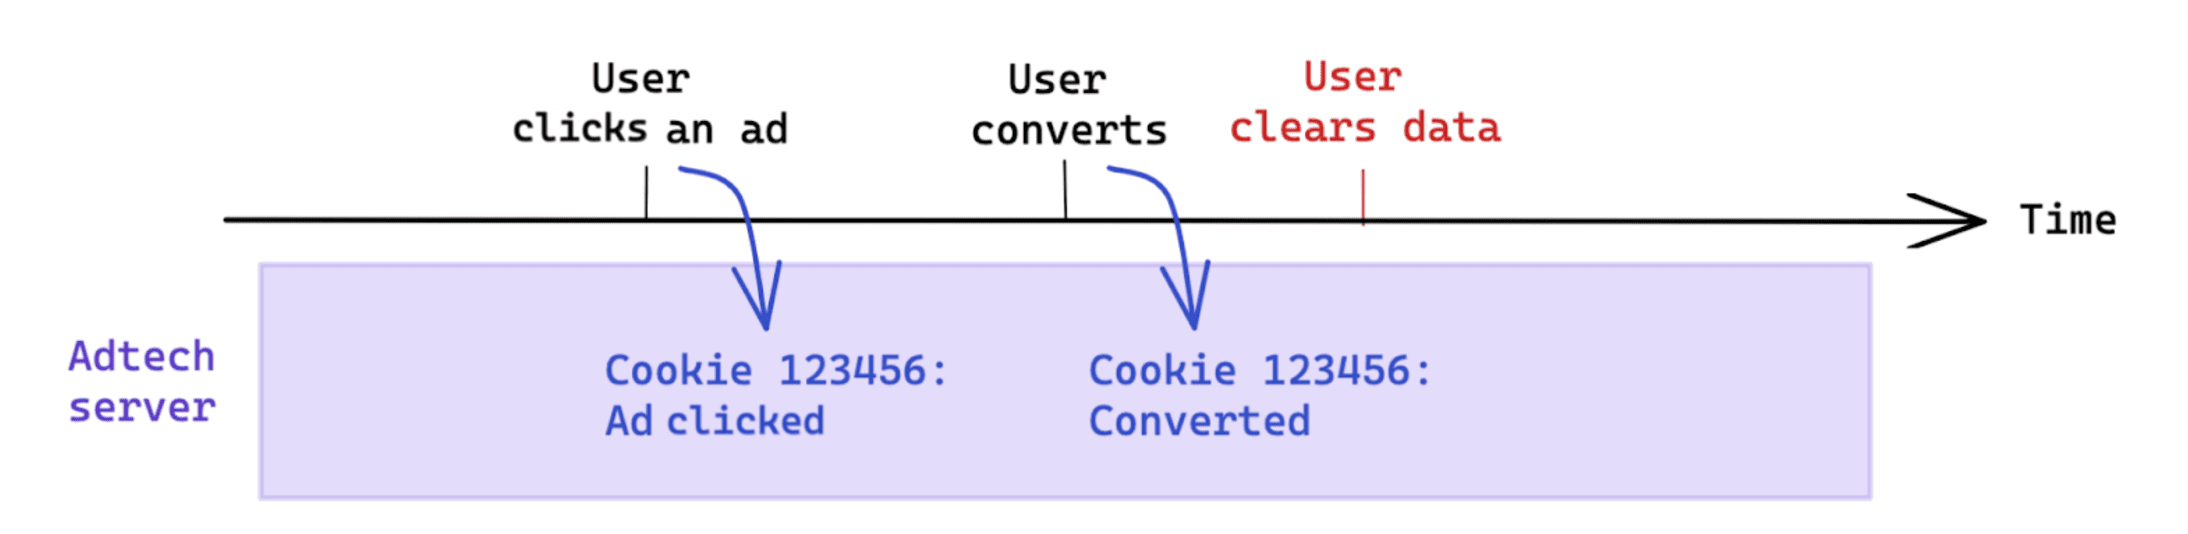 Удаление данных, инициированное пользователем после конверсии, не влияет на отслеживание на основе файлов cookie.